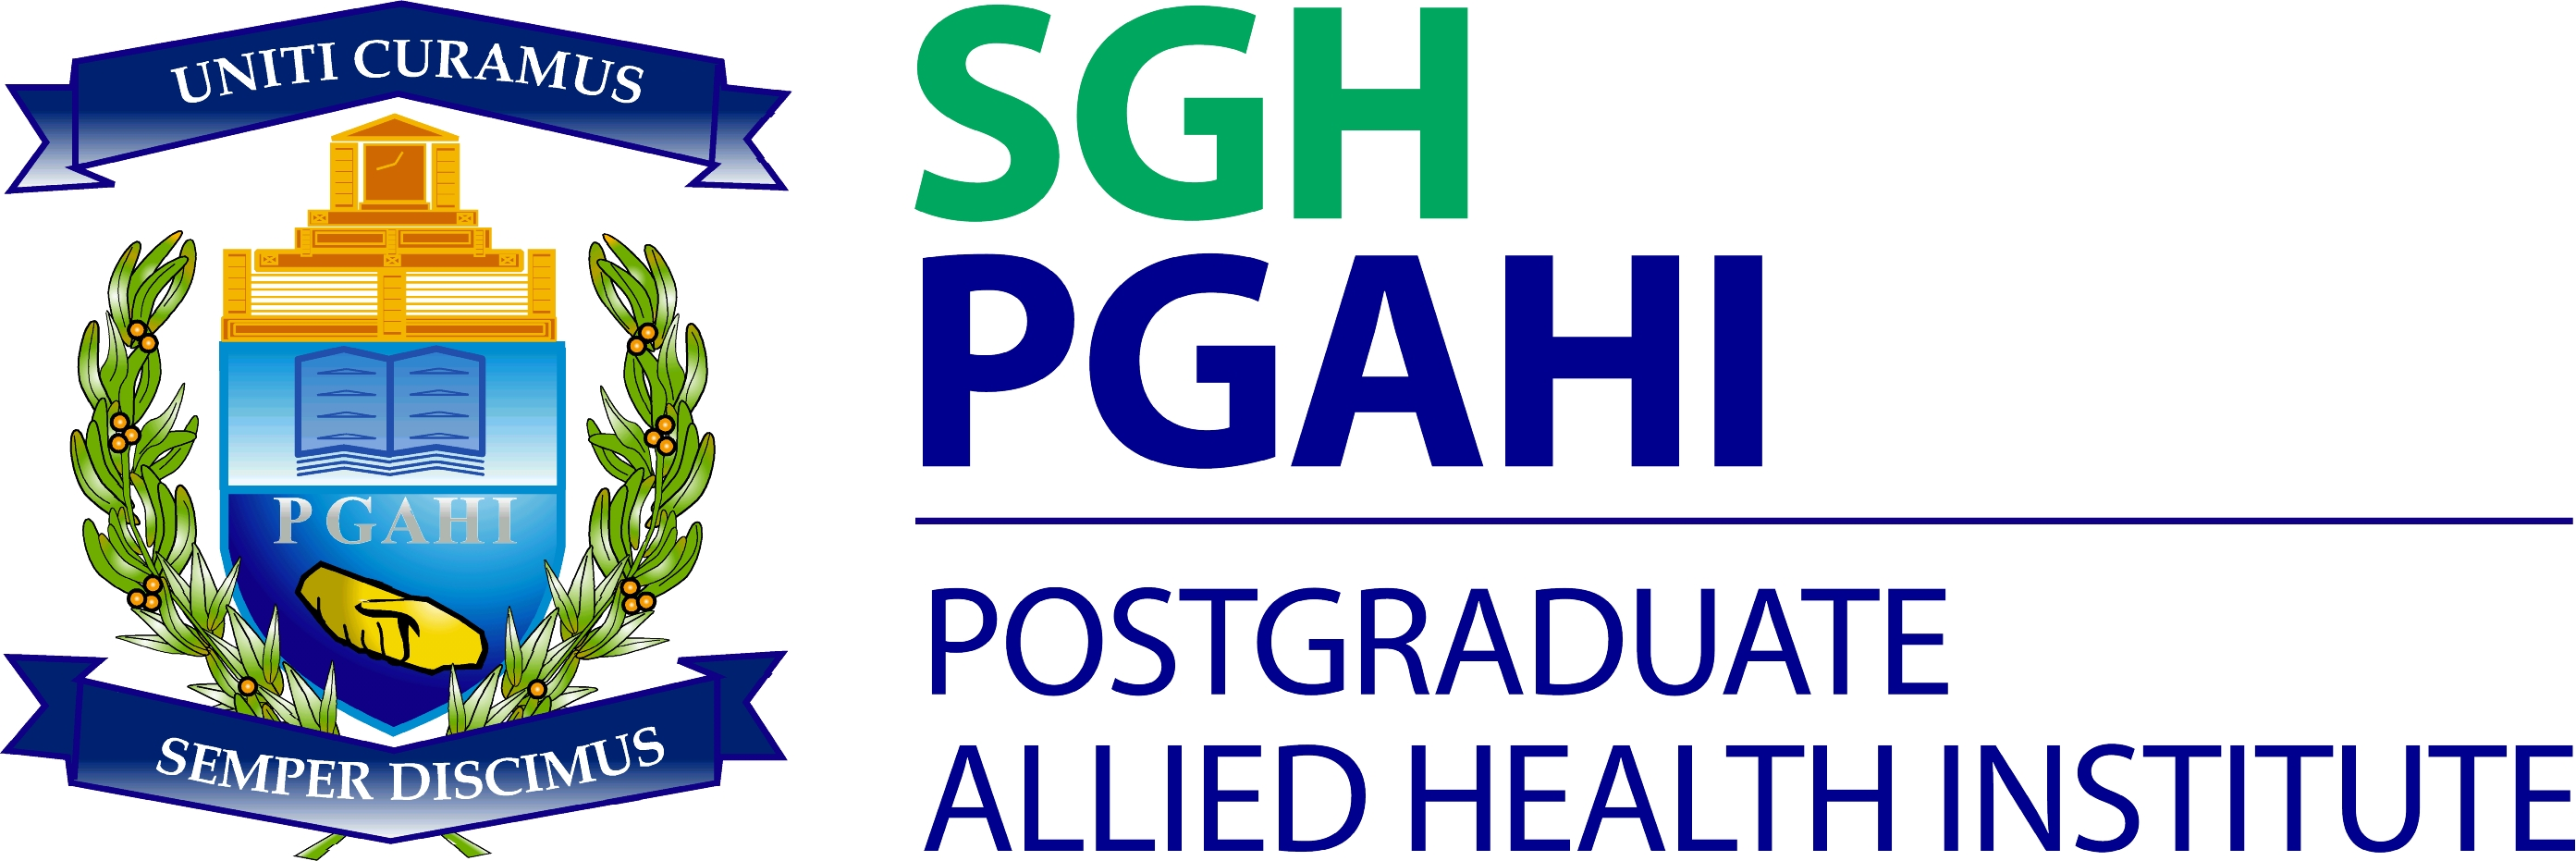 PGAHI Logo.bmp